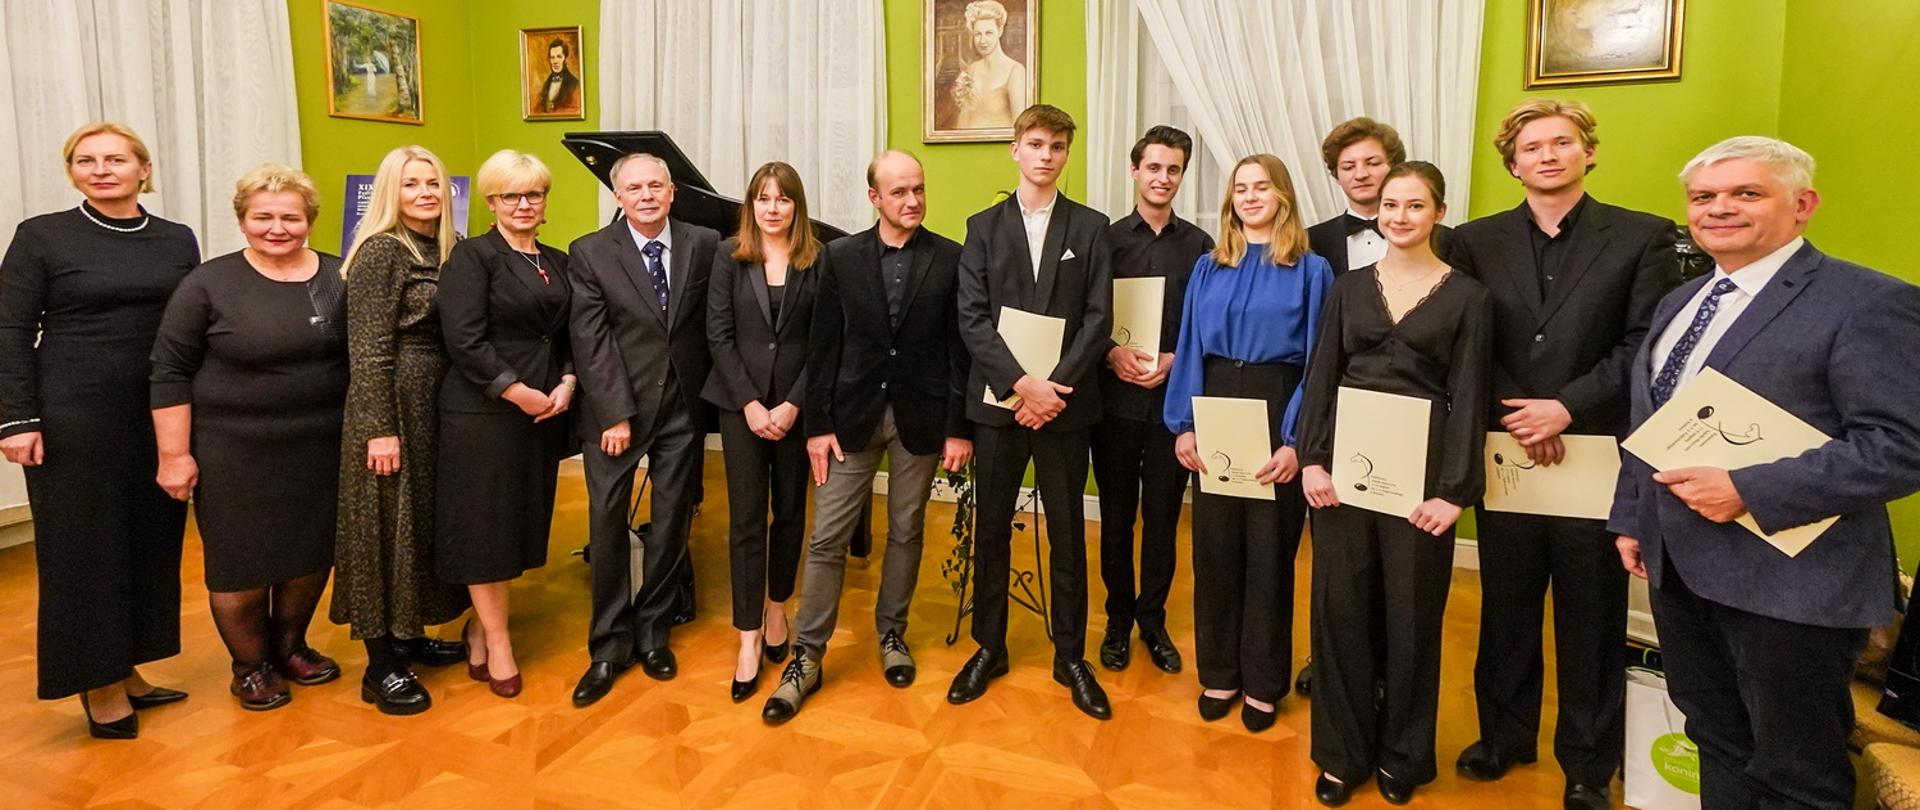 Laureaci, jurorzy i organizatorzy Festiwalu w sali koncertowej Pałacu Bronikowskich w Żychlinie